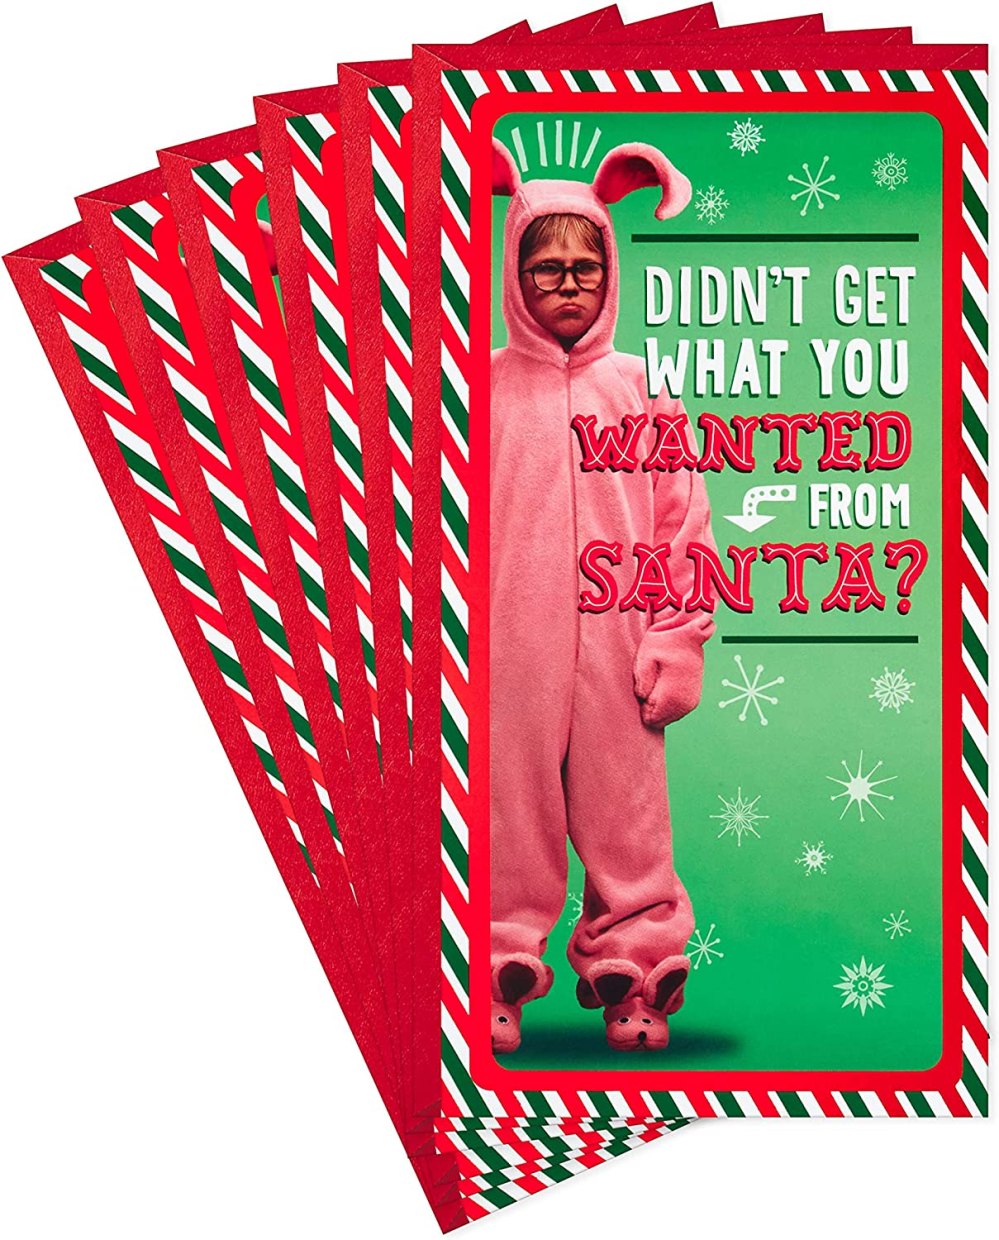 15 Hilarious Christmas Gag Gift Ideas - Society19